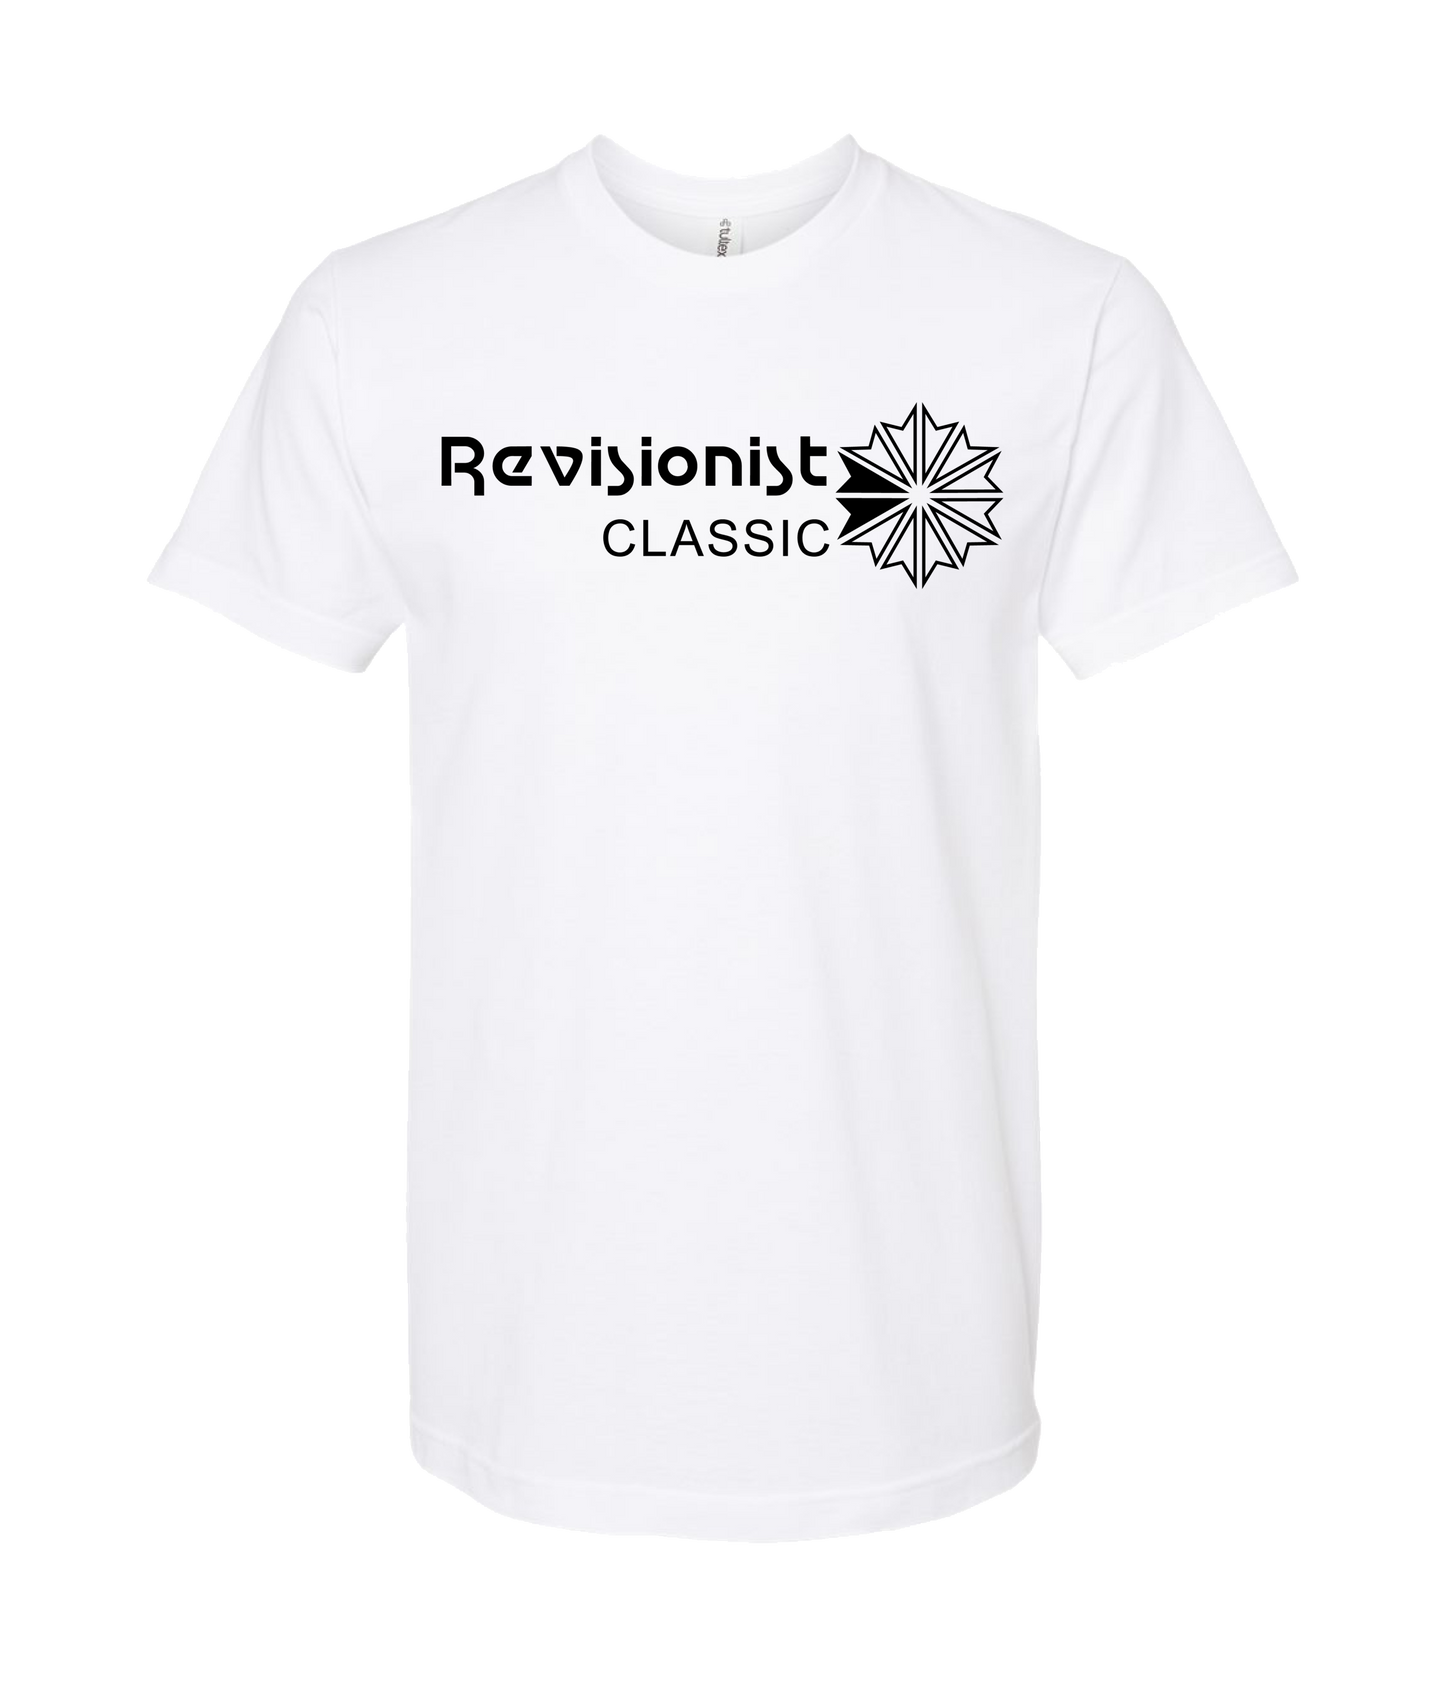 Revisionist - Logo - White T-Shirt